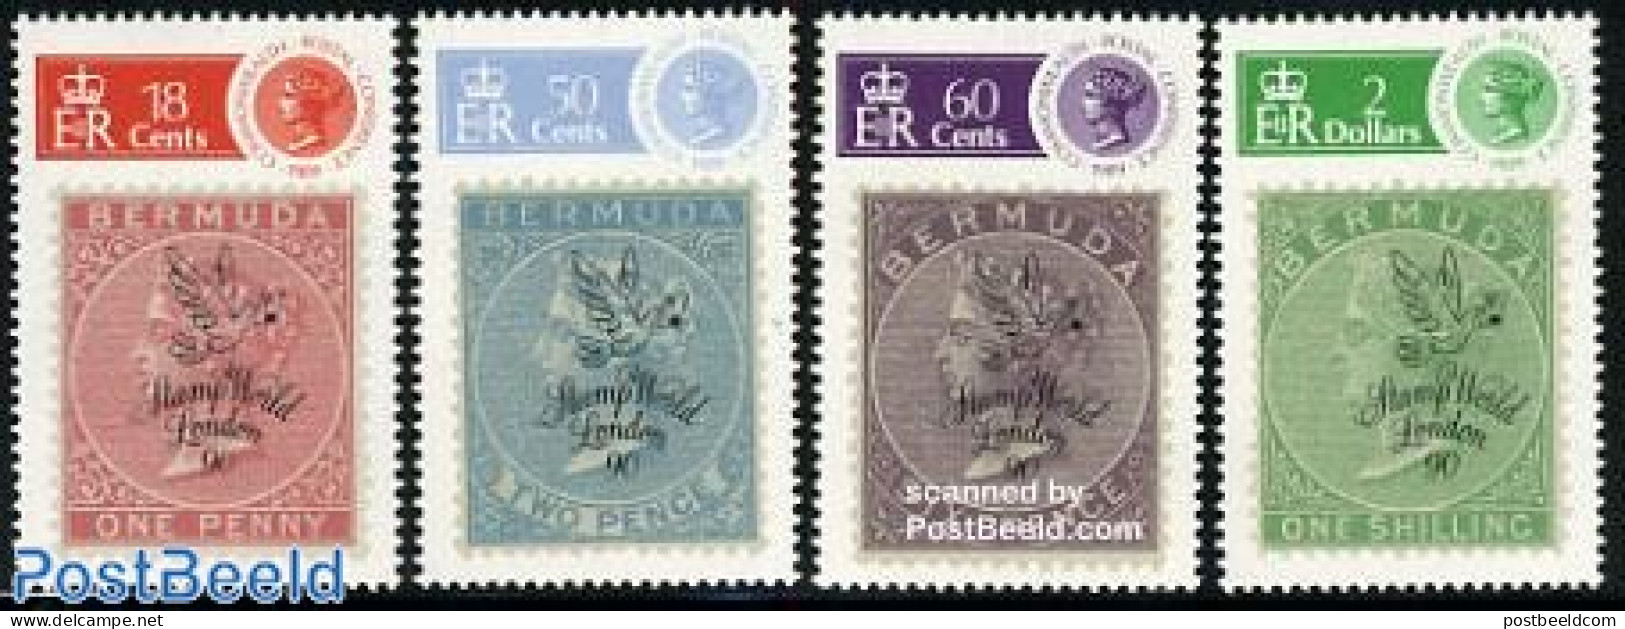 Bermuda 1990 Stamp World London 4v, Mint NH, Stamps On Stamps - Briefmarken Auf Briefmarken